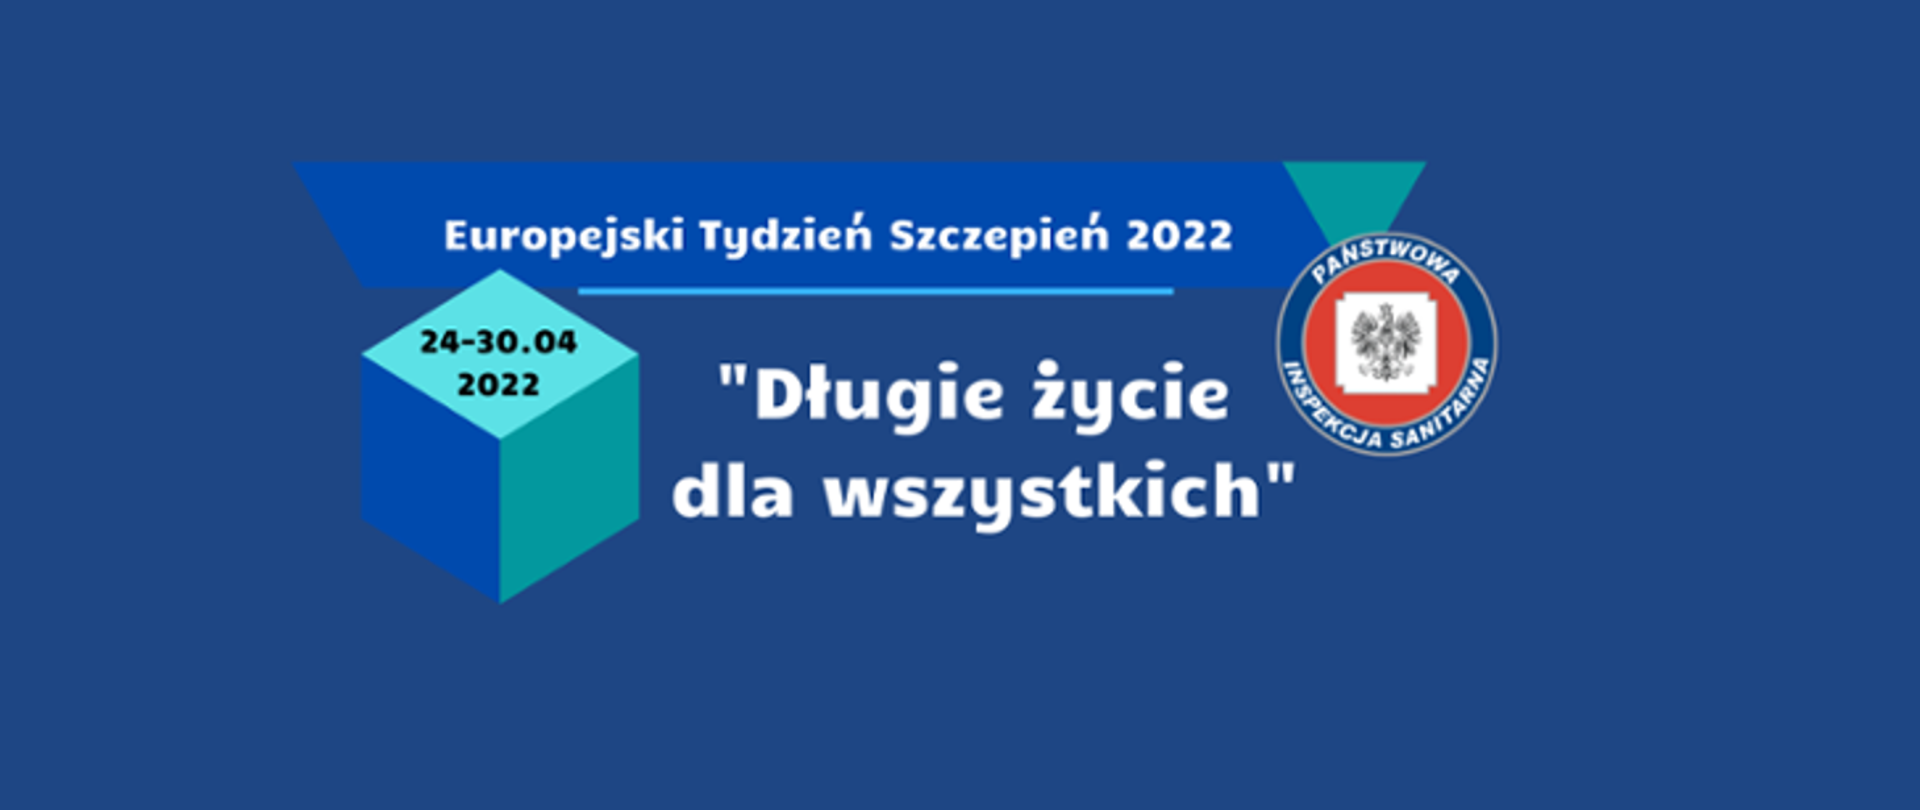 Europejski Tydzień Szczepień 2022 "Długie życie dla wszystkich"